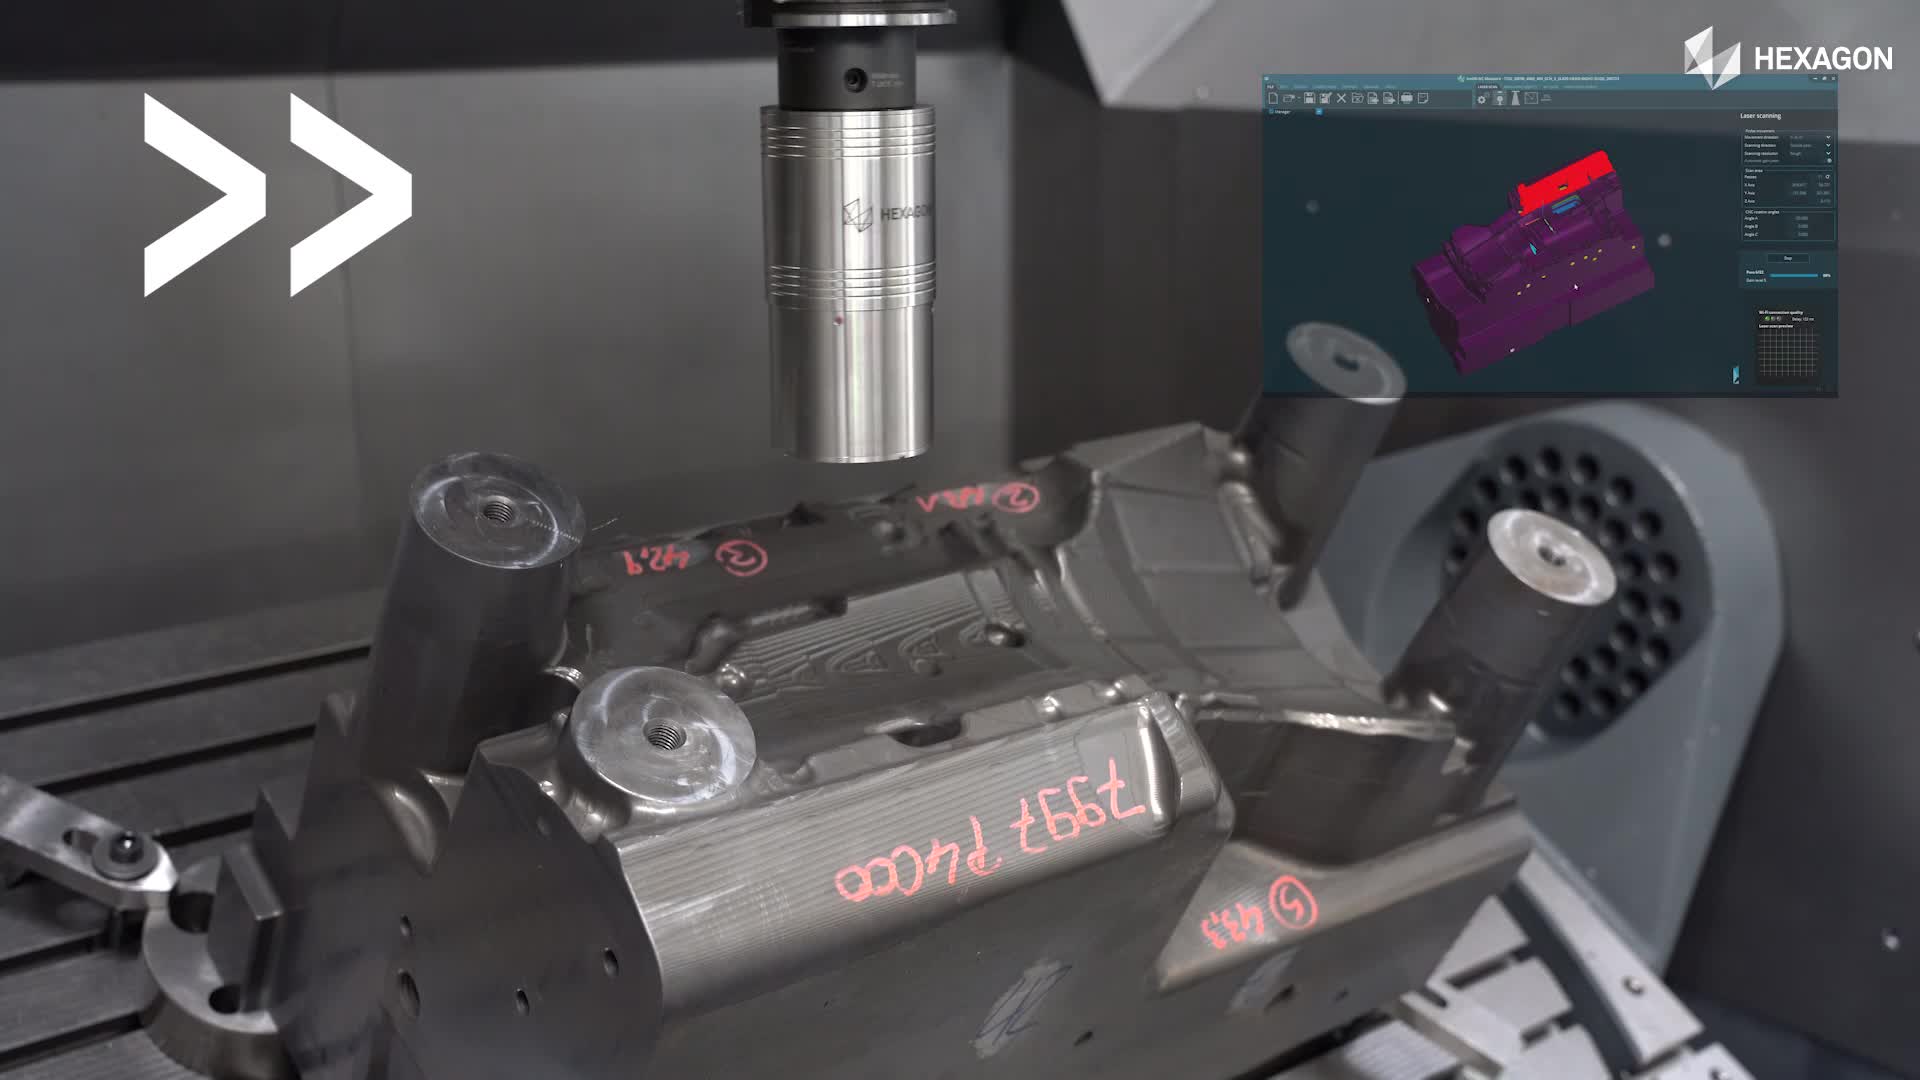 Hexagon erhöht die Produktionssicherheit durch schnelle Aufmaßerkennung und Teilausrichtung von Rohteilen mit nur einem Laserscan direkt in der Werkzeugmaschine